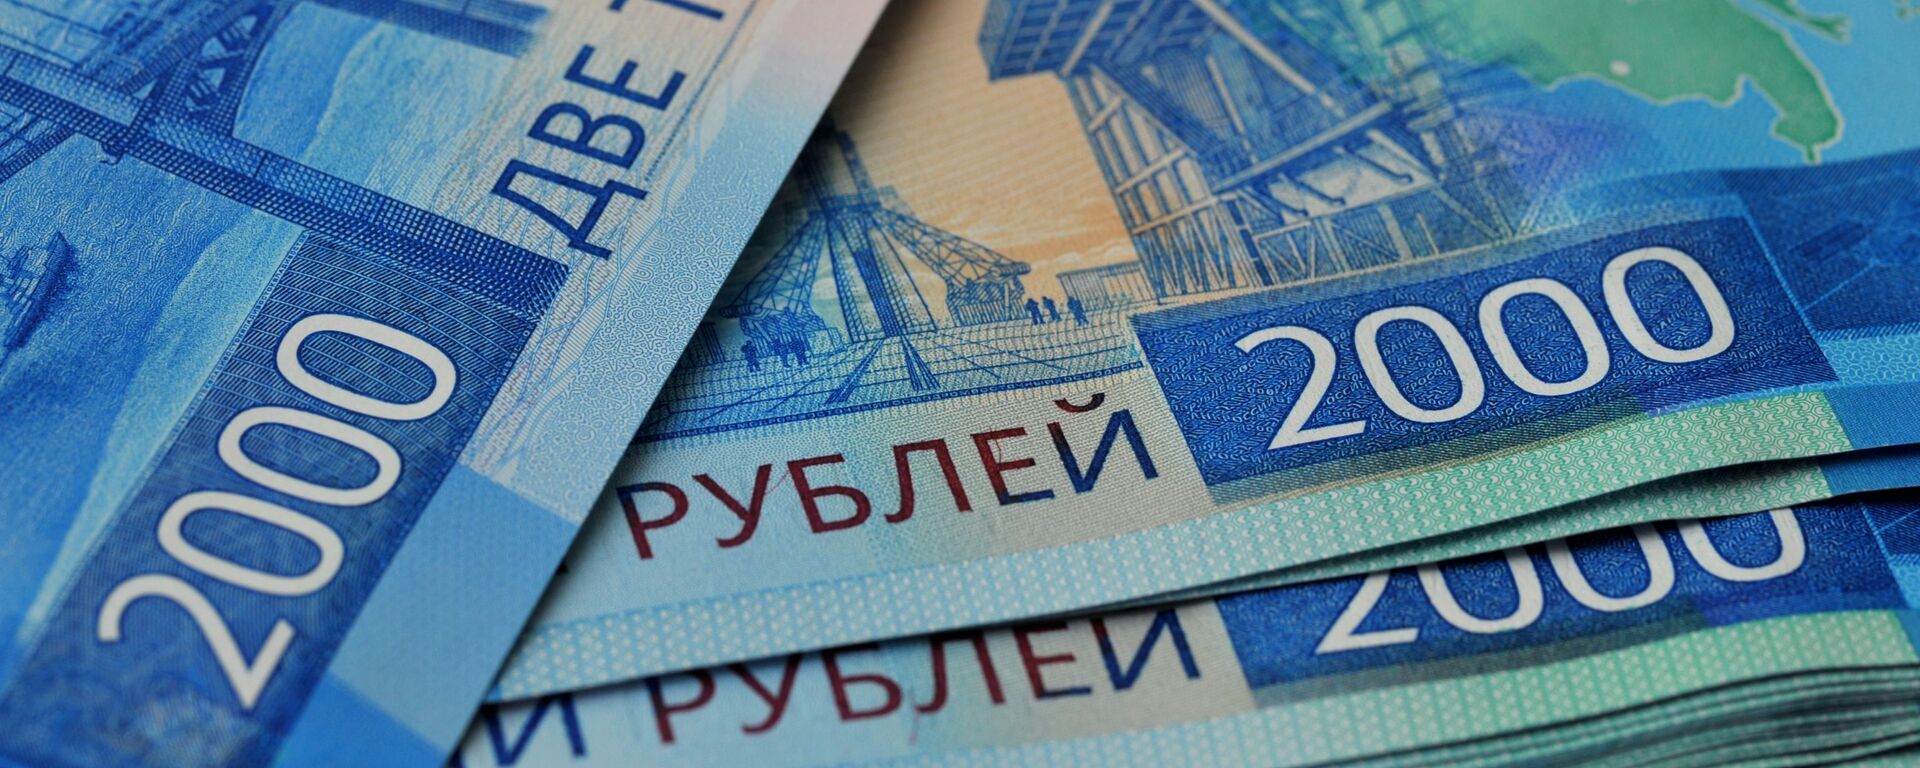 Банкноты номиналом 2000 рублей. - Sputnik Аҧсны, 1920, 08.12.2021